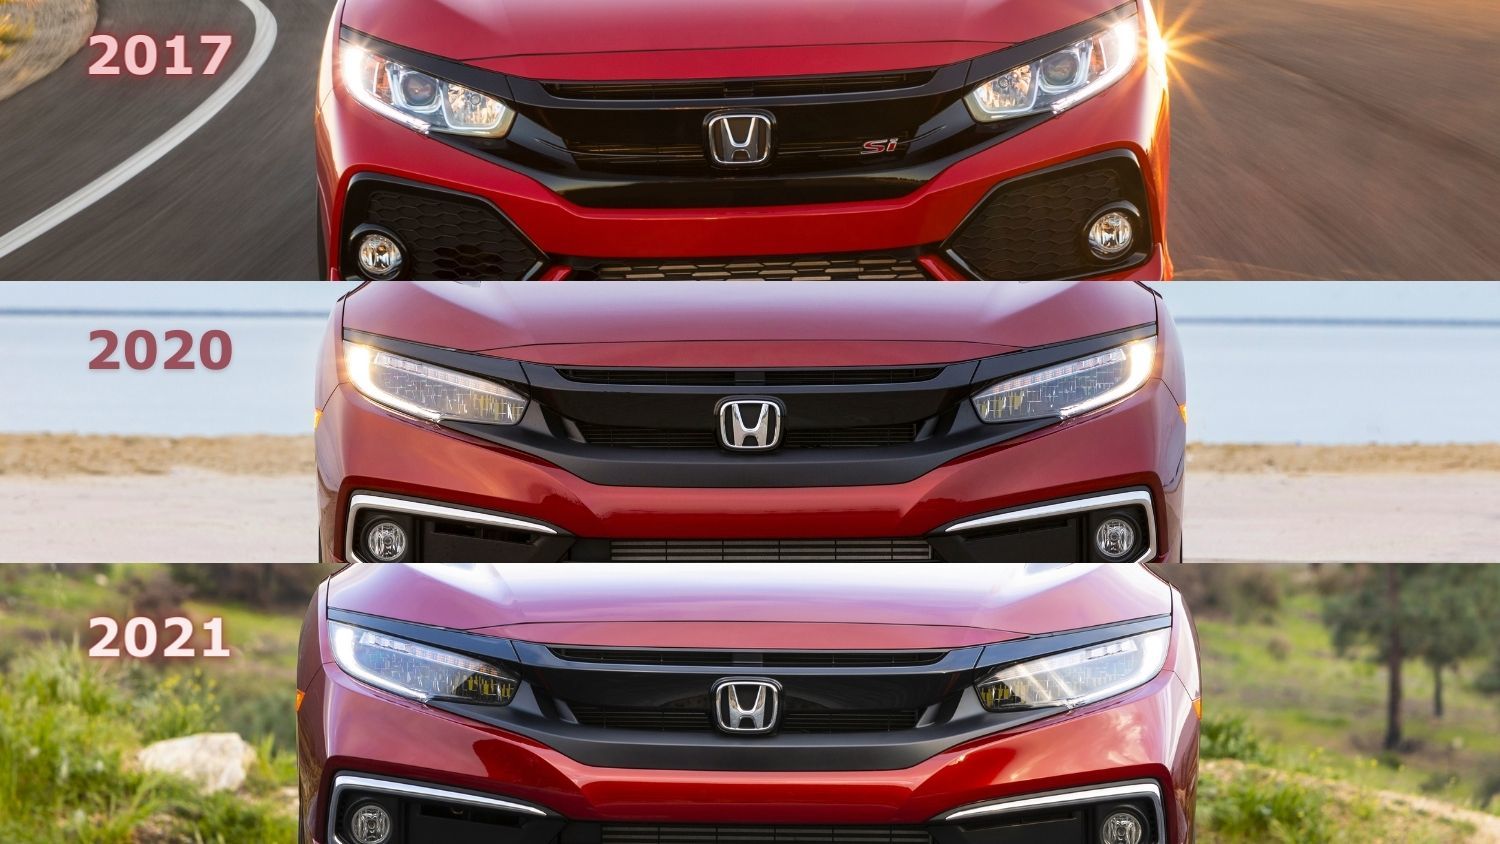 Les trois calandres de la Honda Civic gagnante en 2017, 2020 et 2021